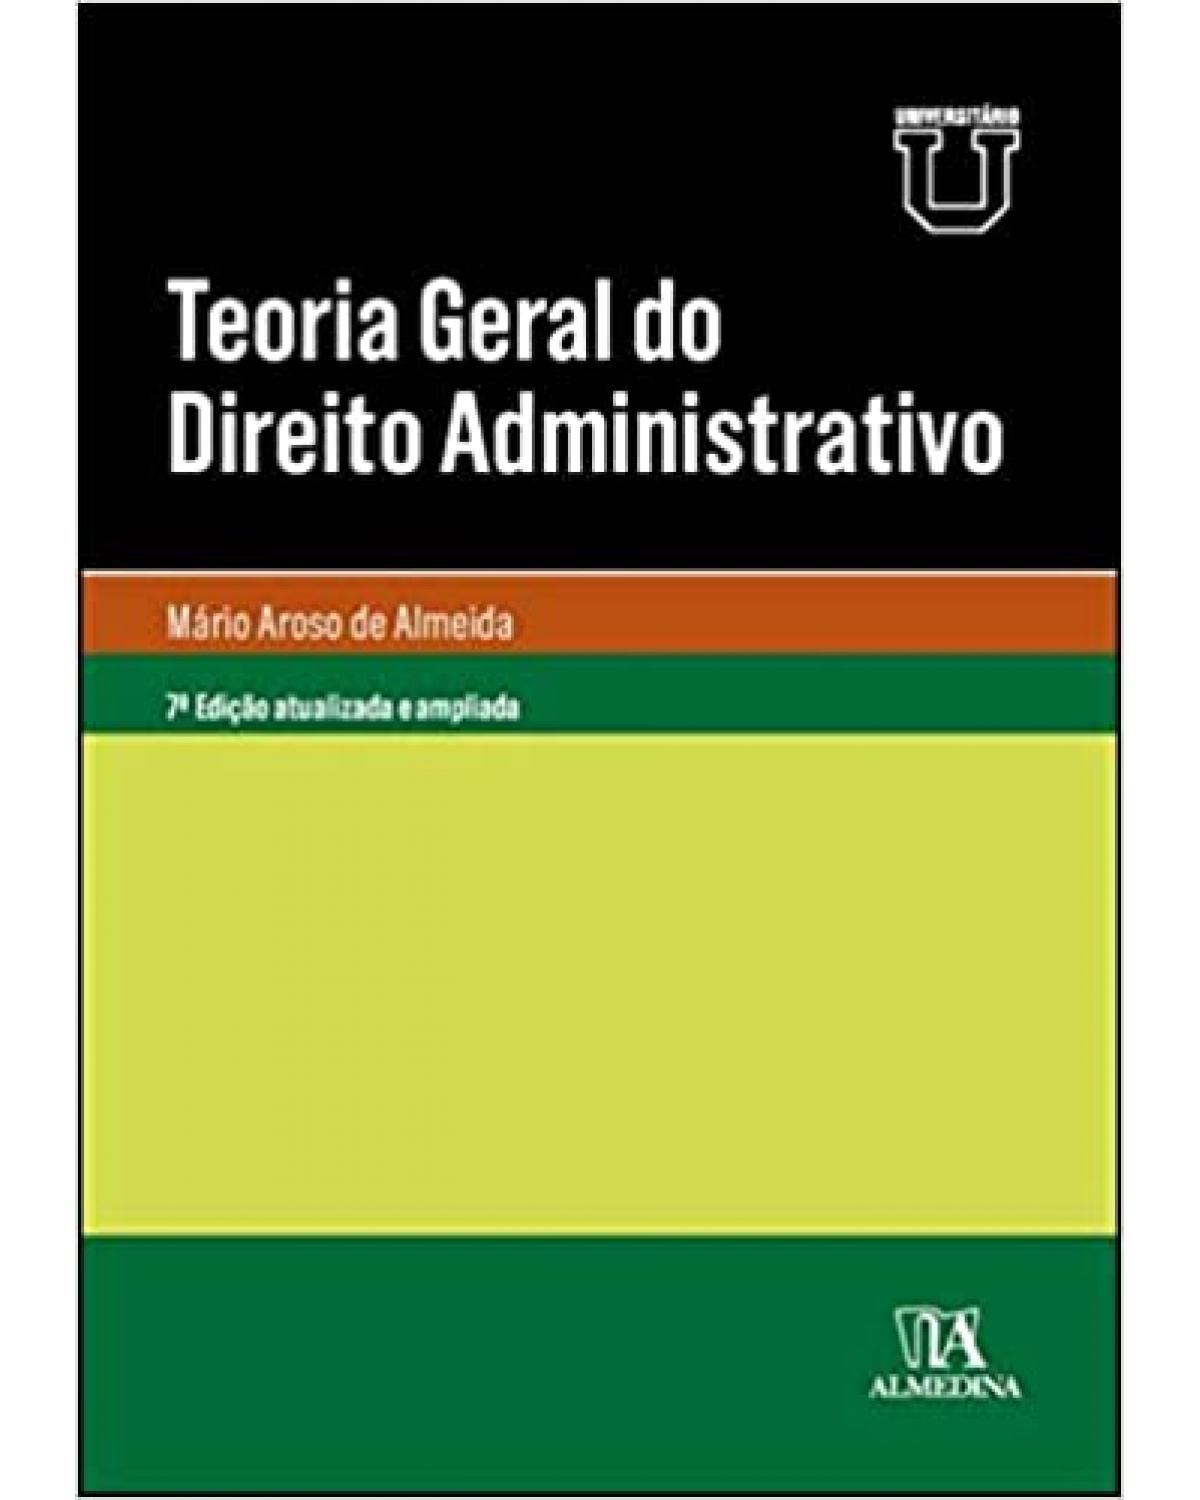 Teoria geral do direito administrativo - 7ª Edição | 2021